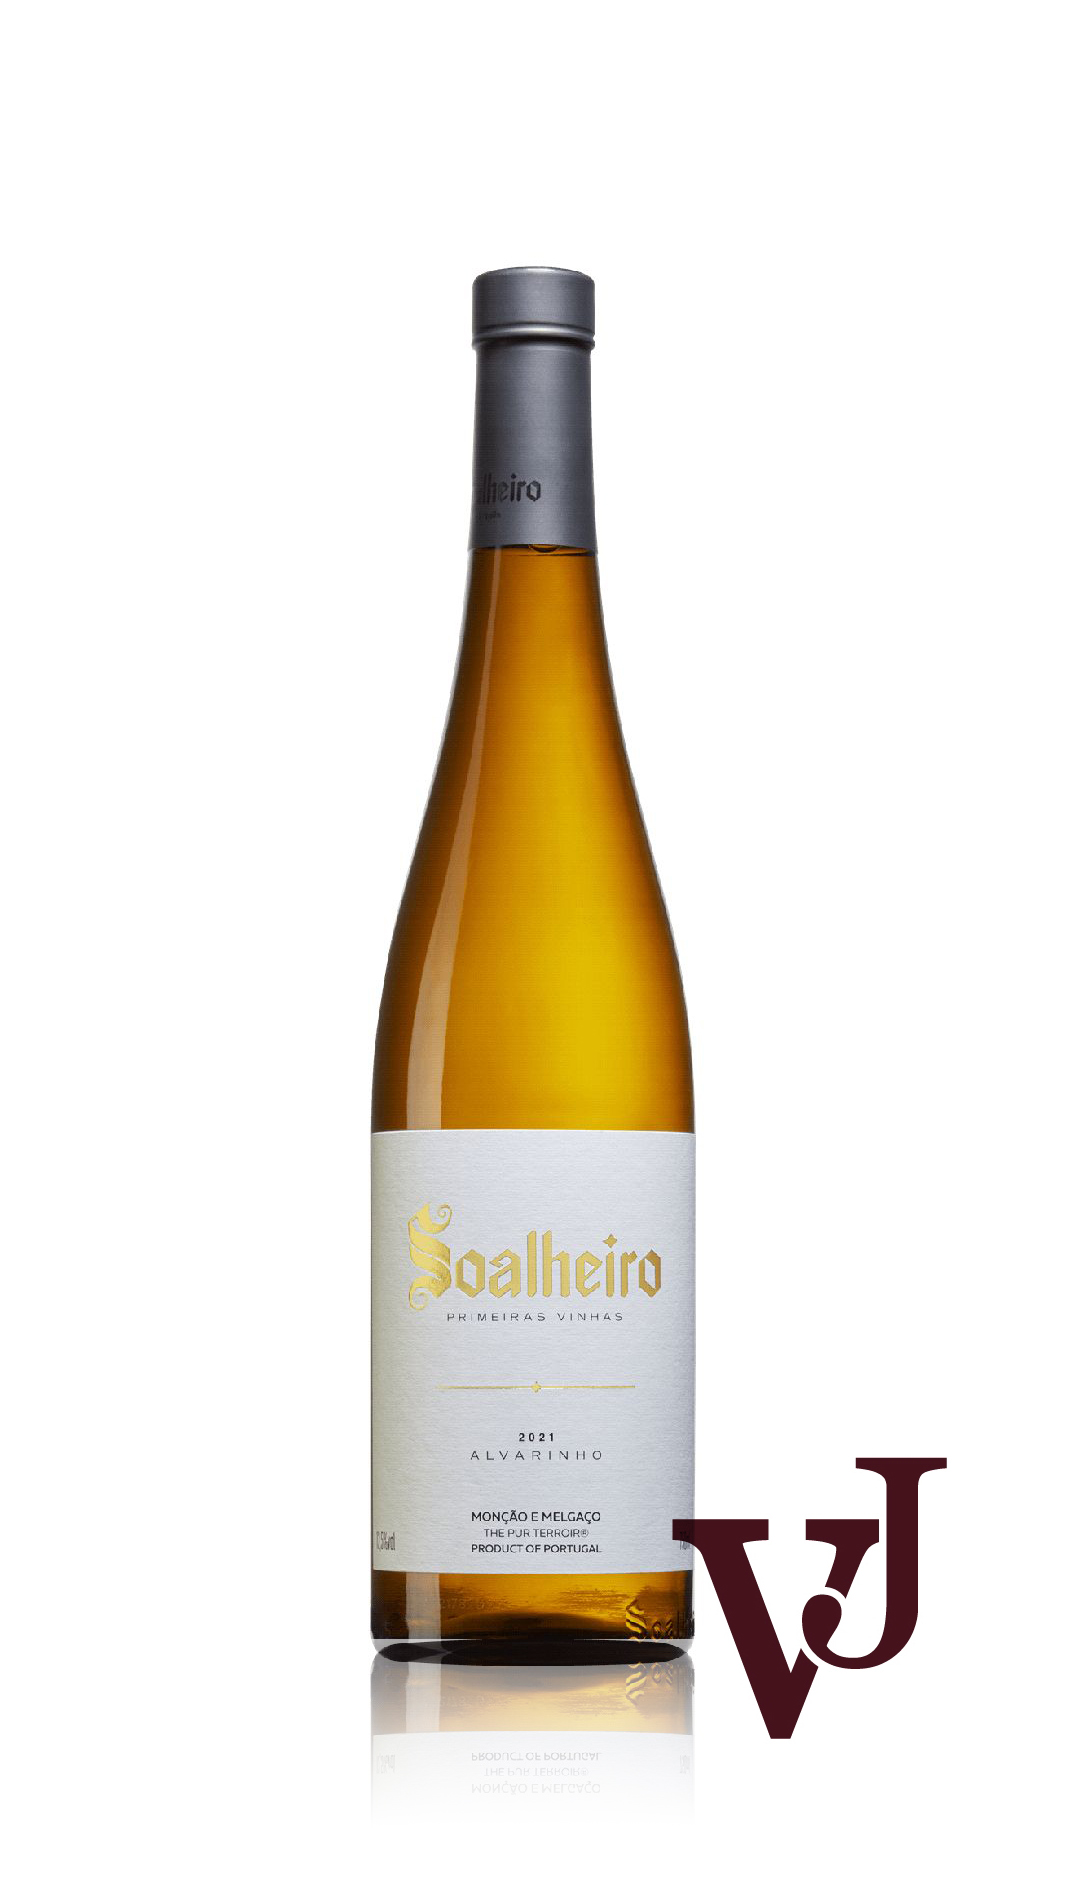 Vitt Vin - Soalheiro artikel nummer 9495001 från producenten Soalheiro från området Portugal